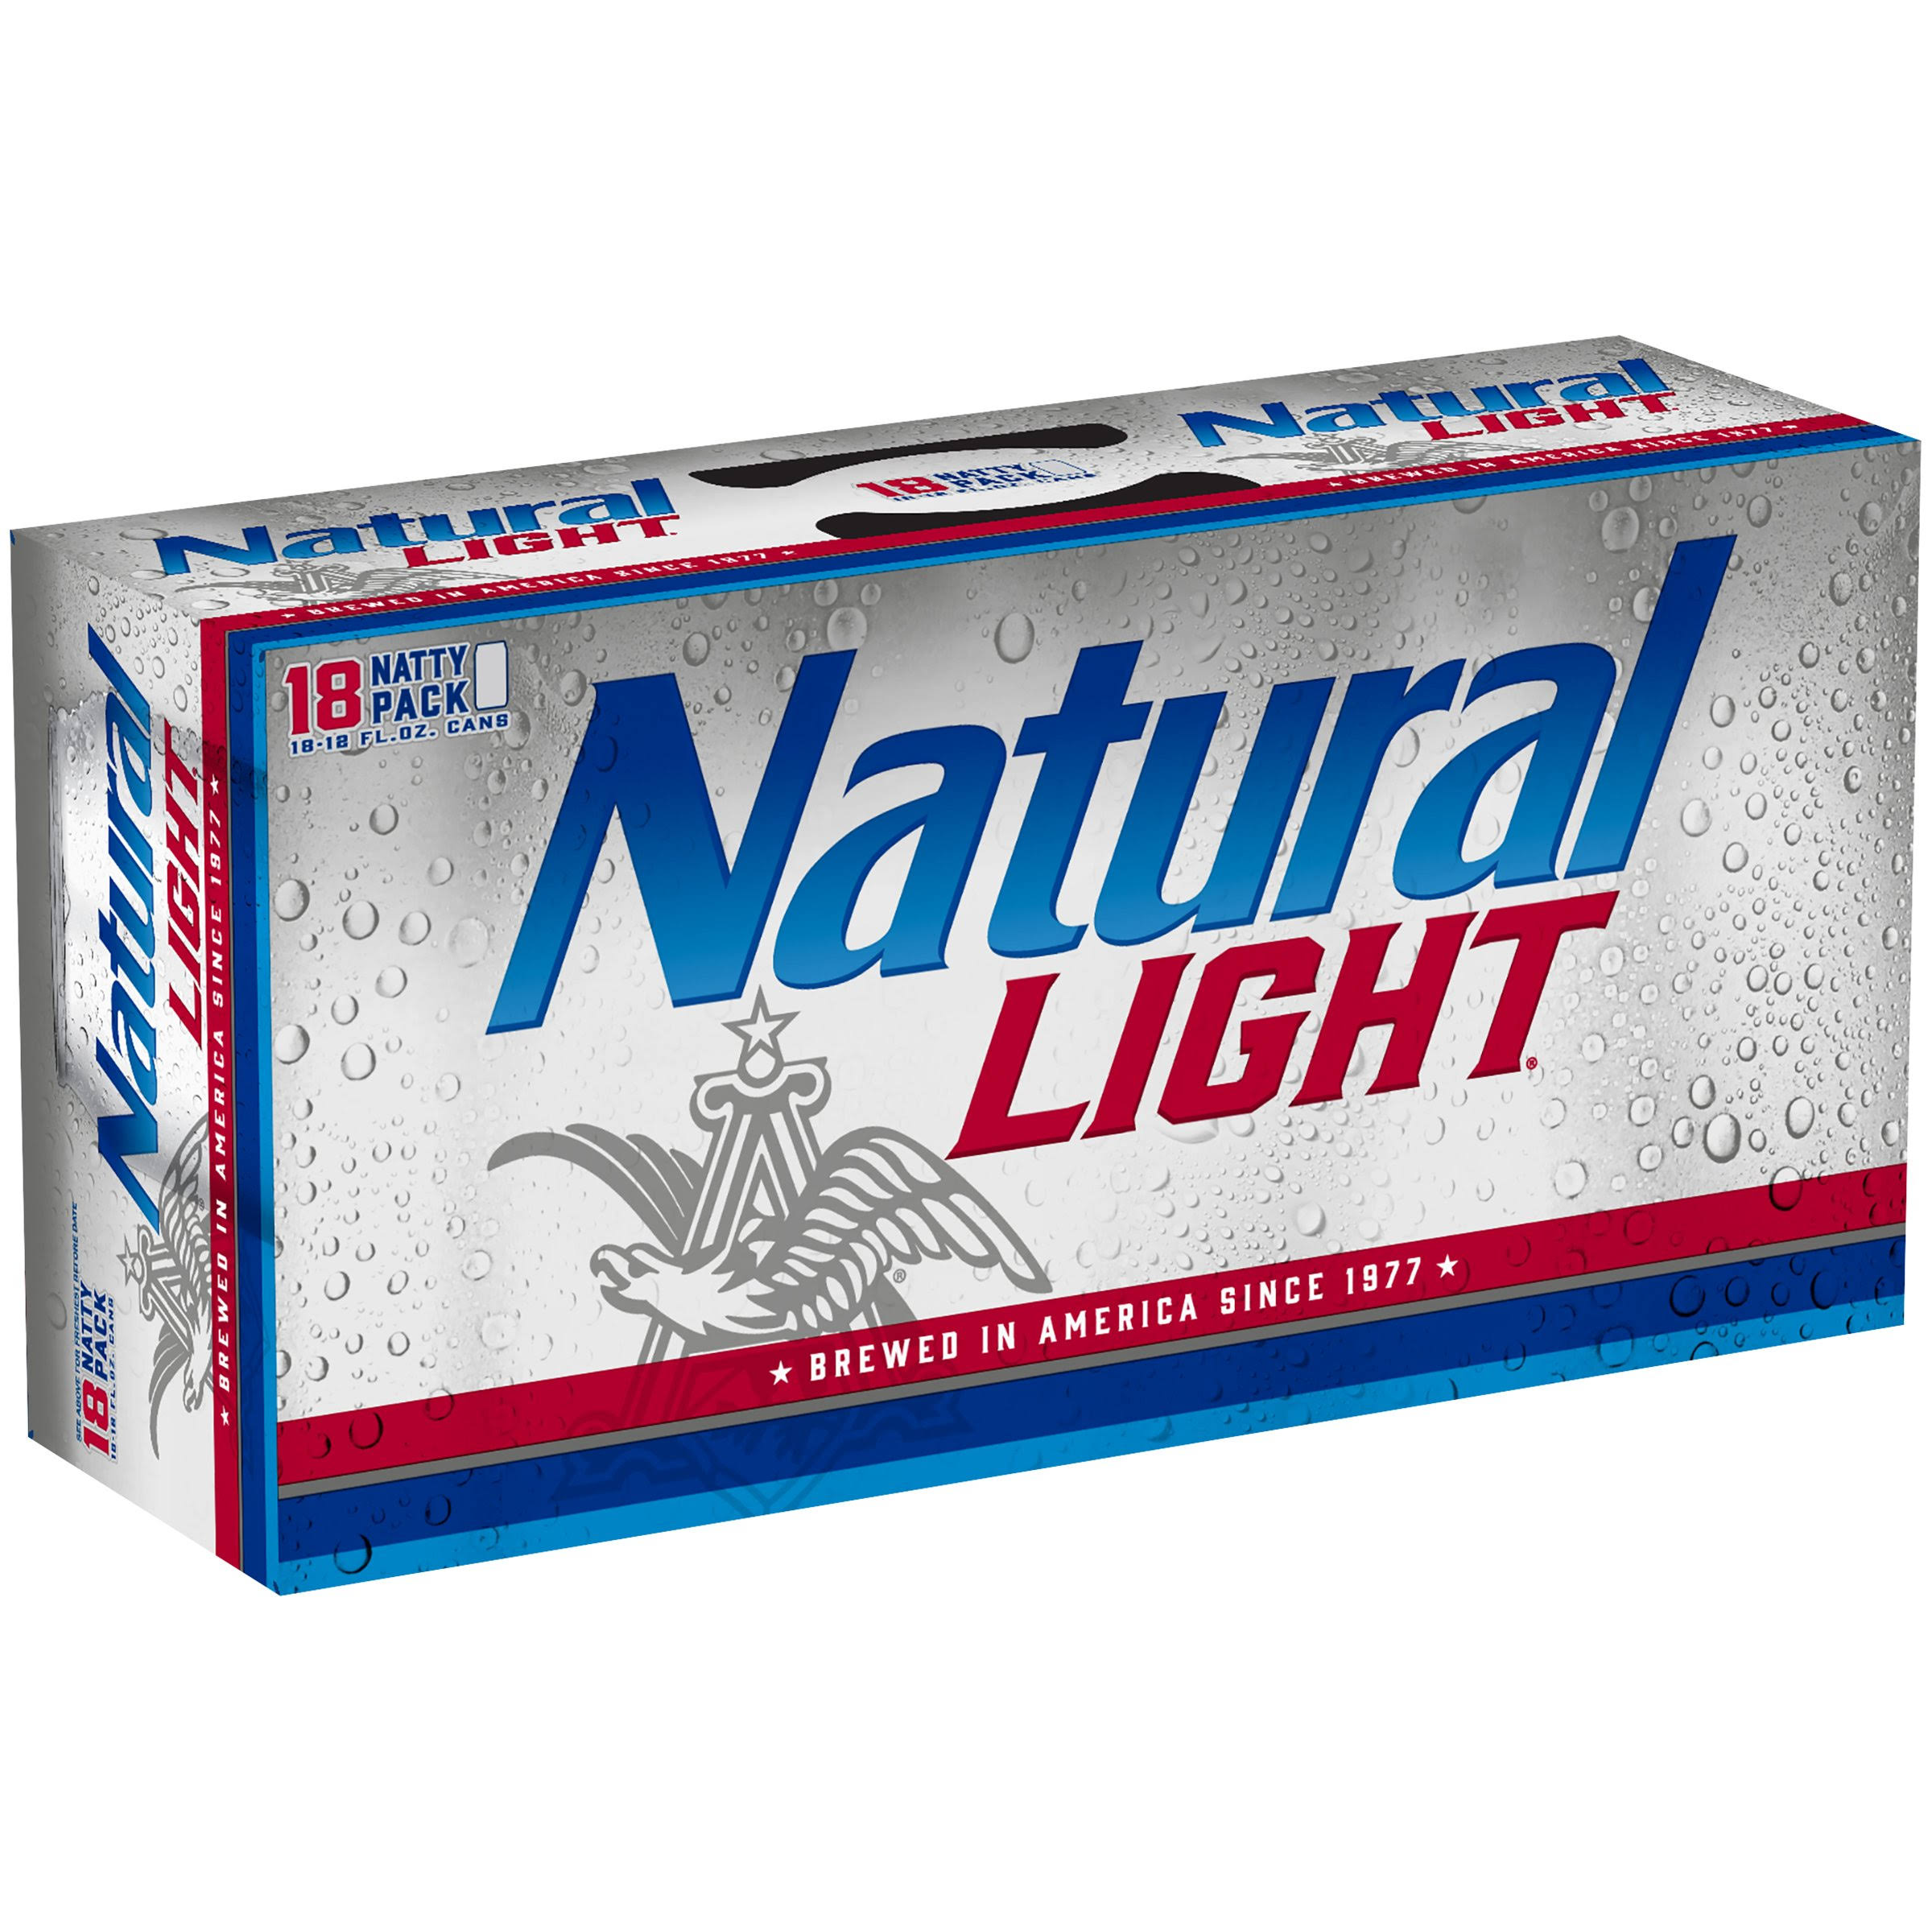 Natural Light Beer - 18 Pack